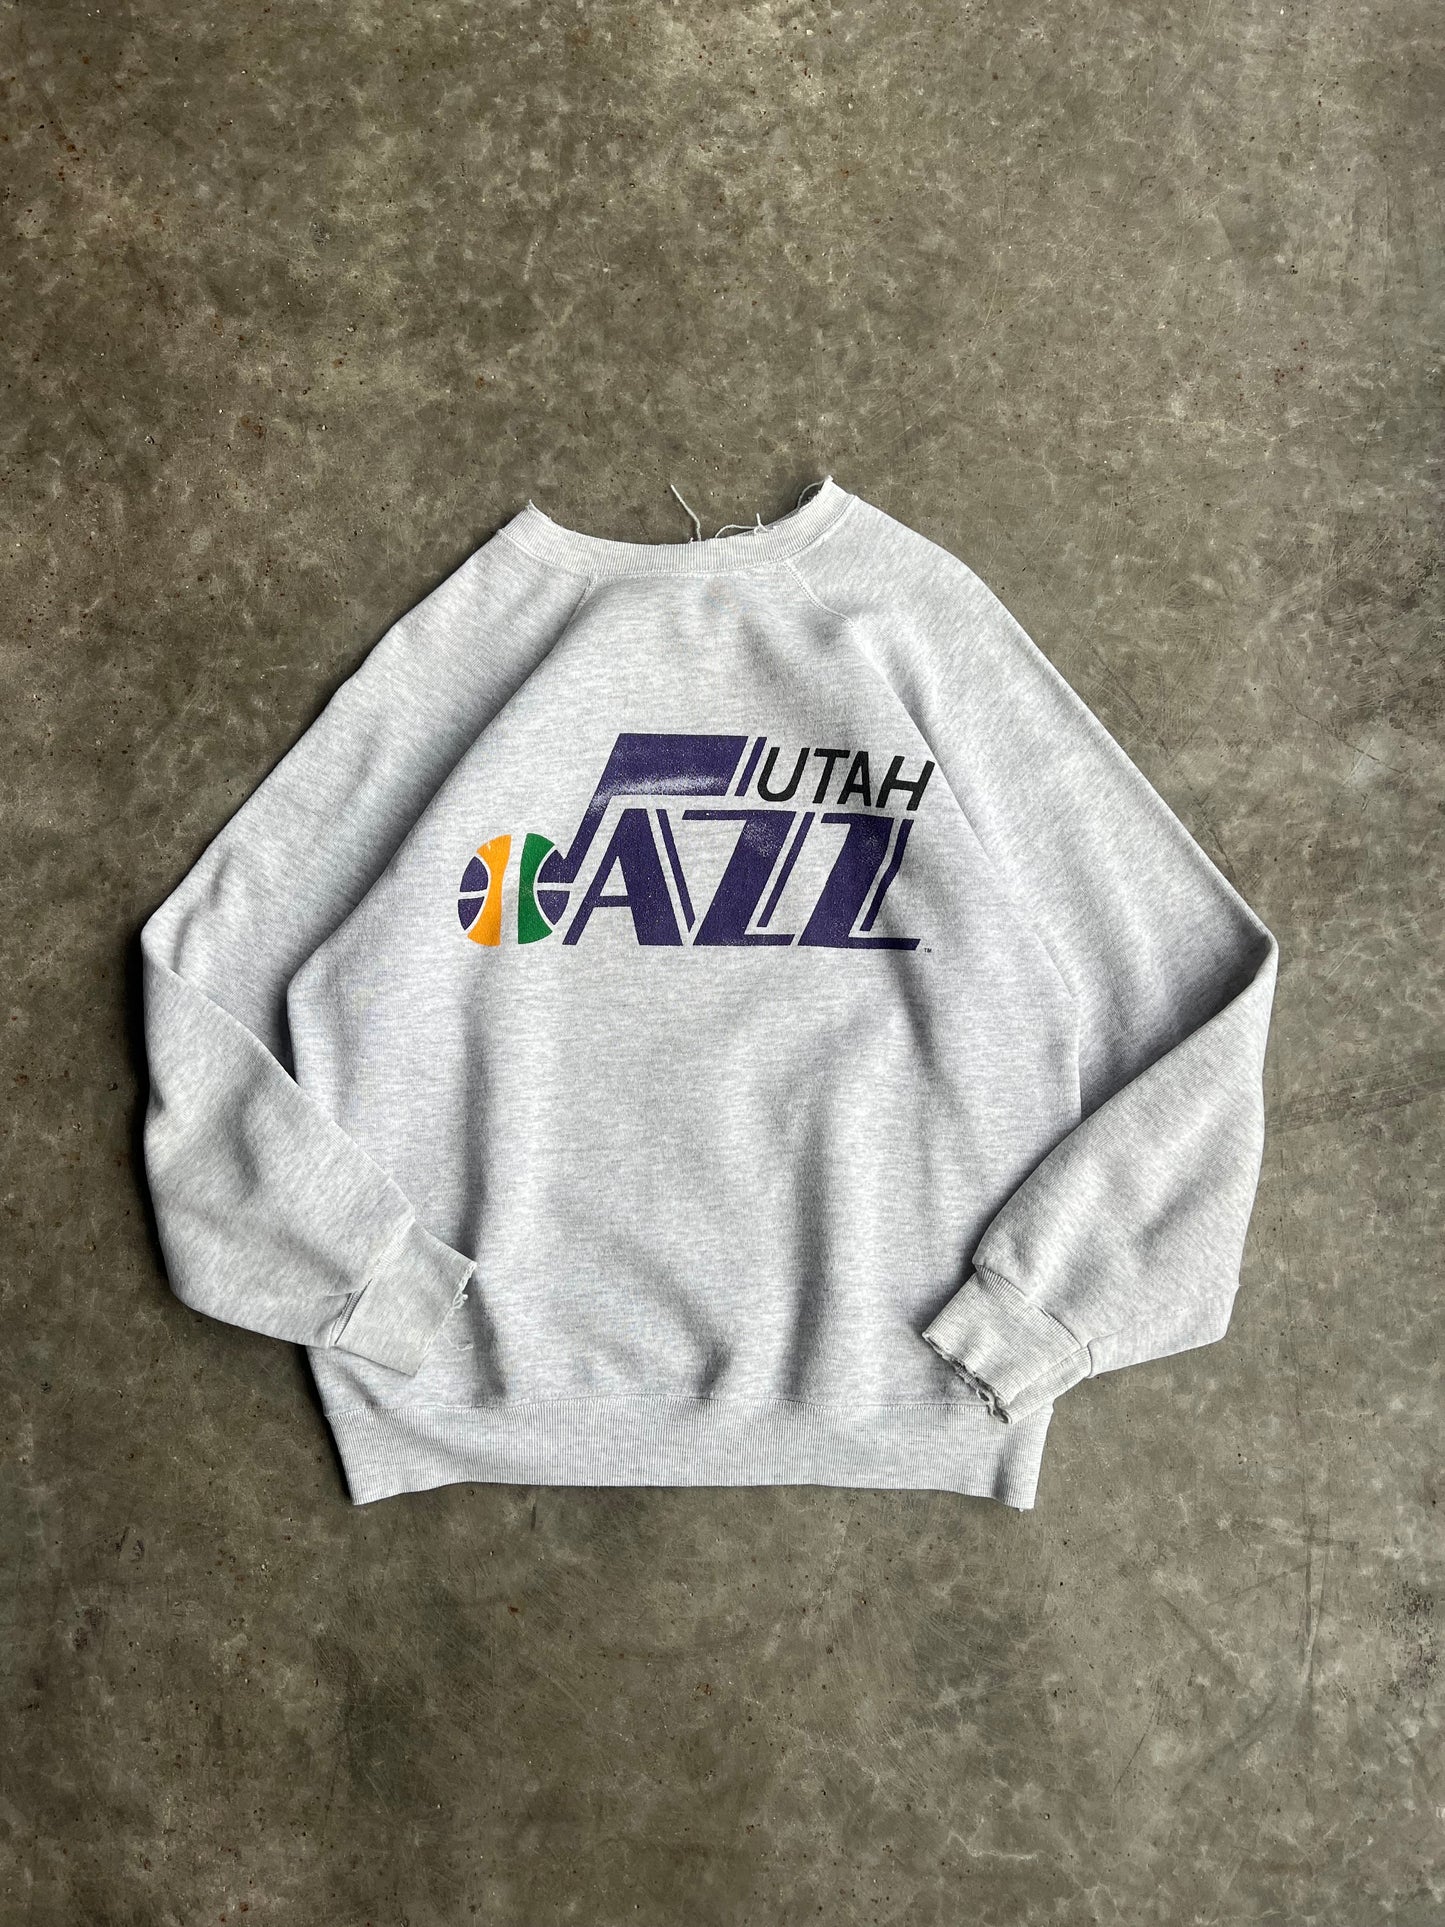 Vintage Utah Jazz Crew - L